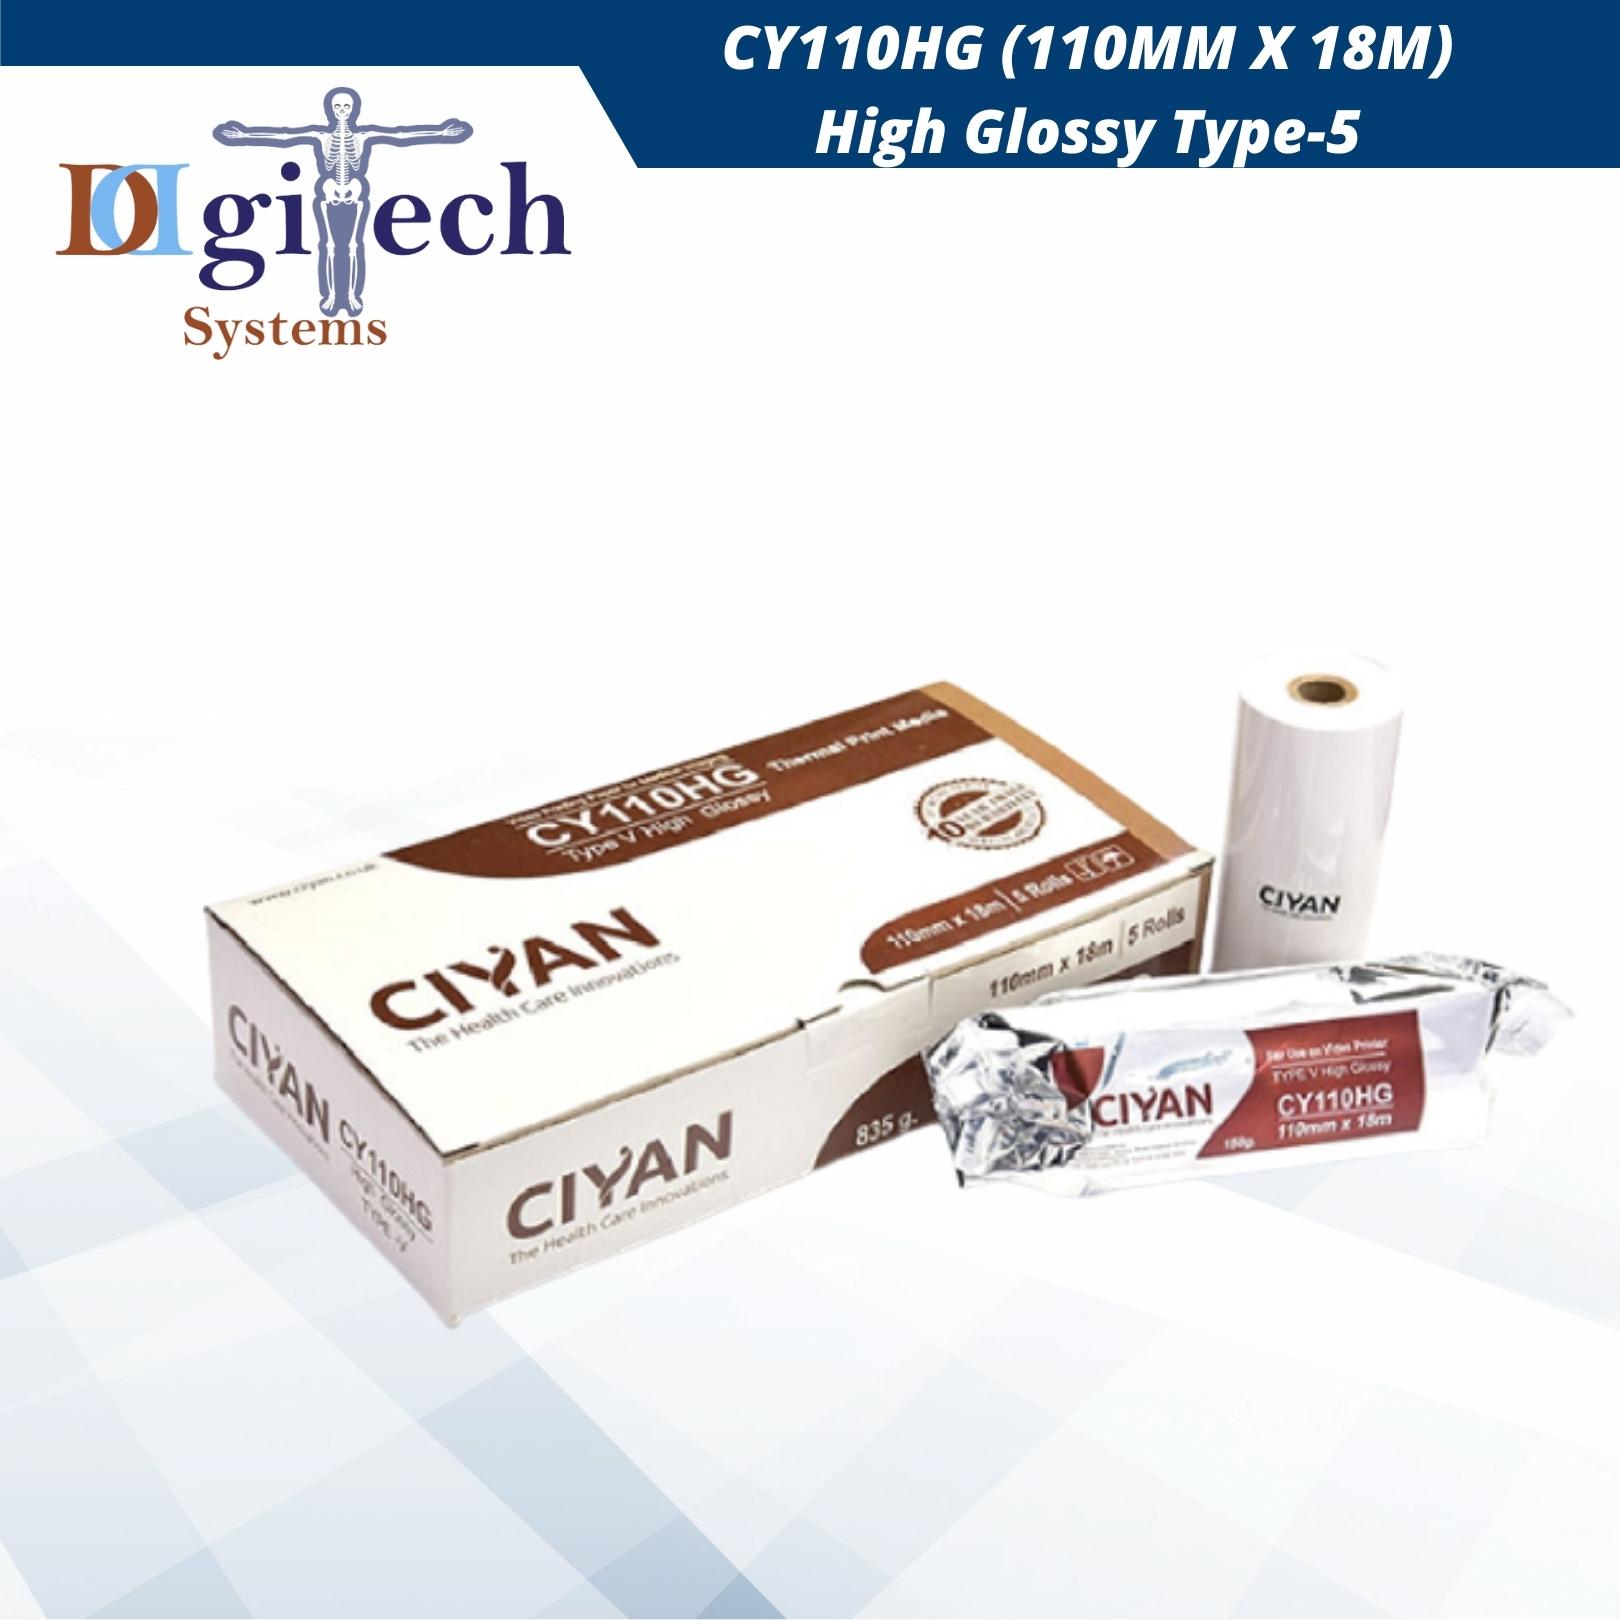 CY110HG (110MM X 18M) High Glossy Type-5​